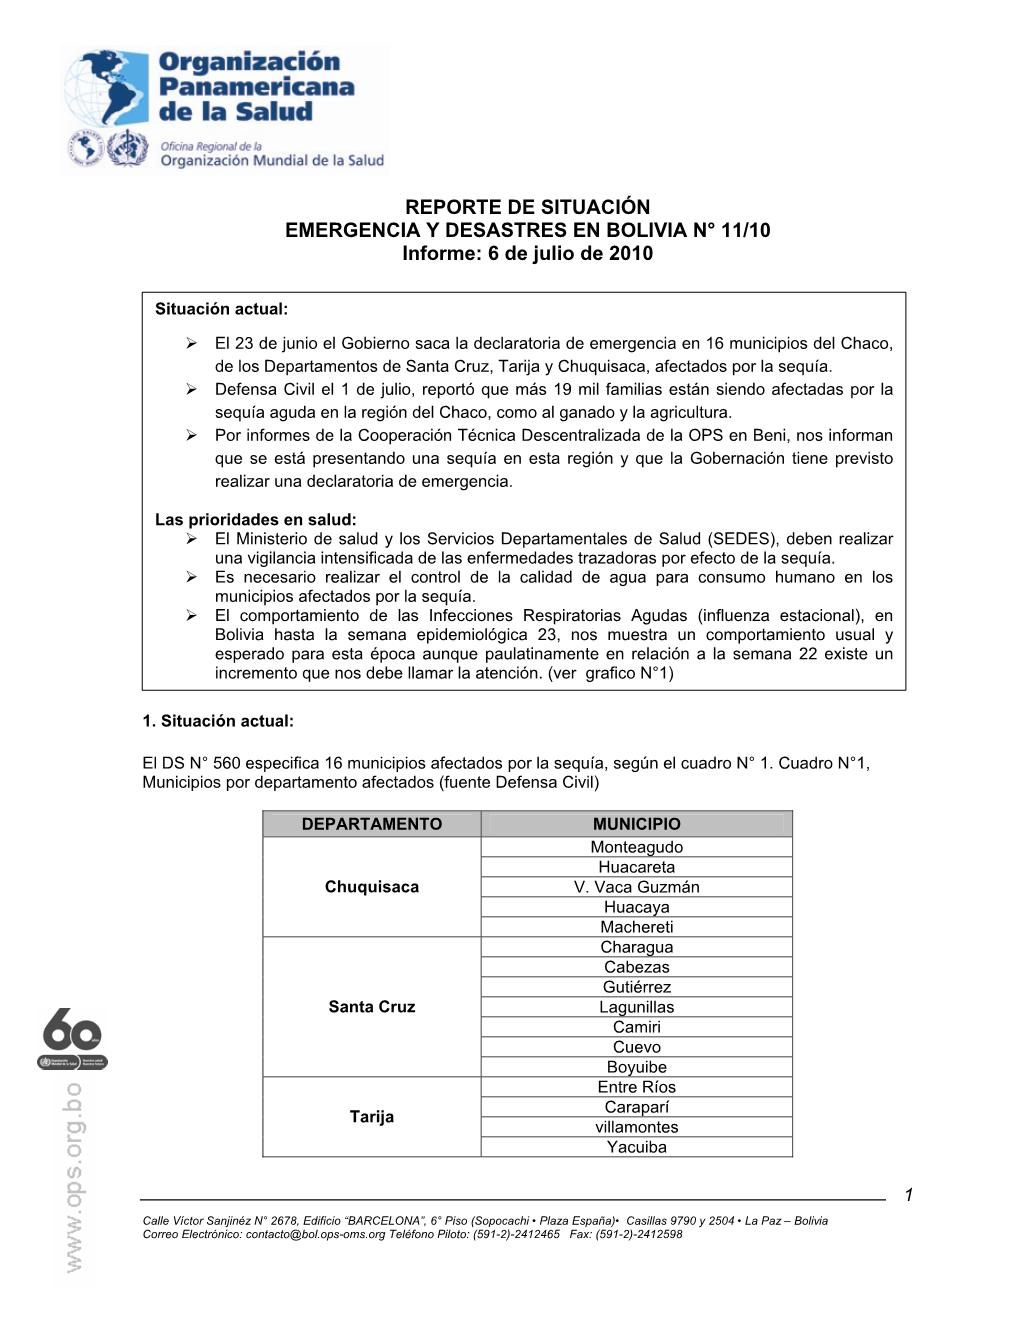 REPORTE DE SITUACIÓN EMERGENCIA Y DESASTRES EN BOLIVIA N° 11/10 Informe: 6 De Julio De 2010